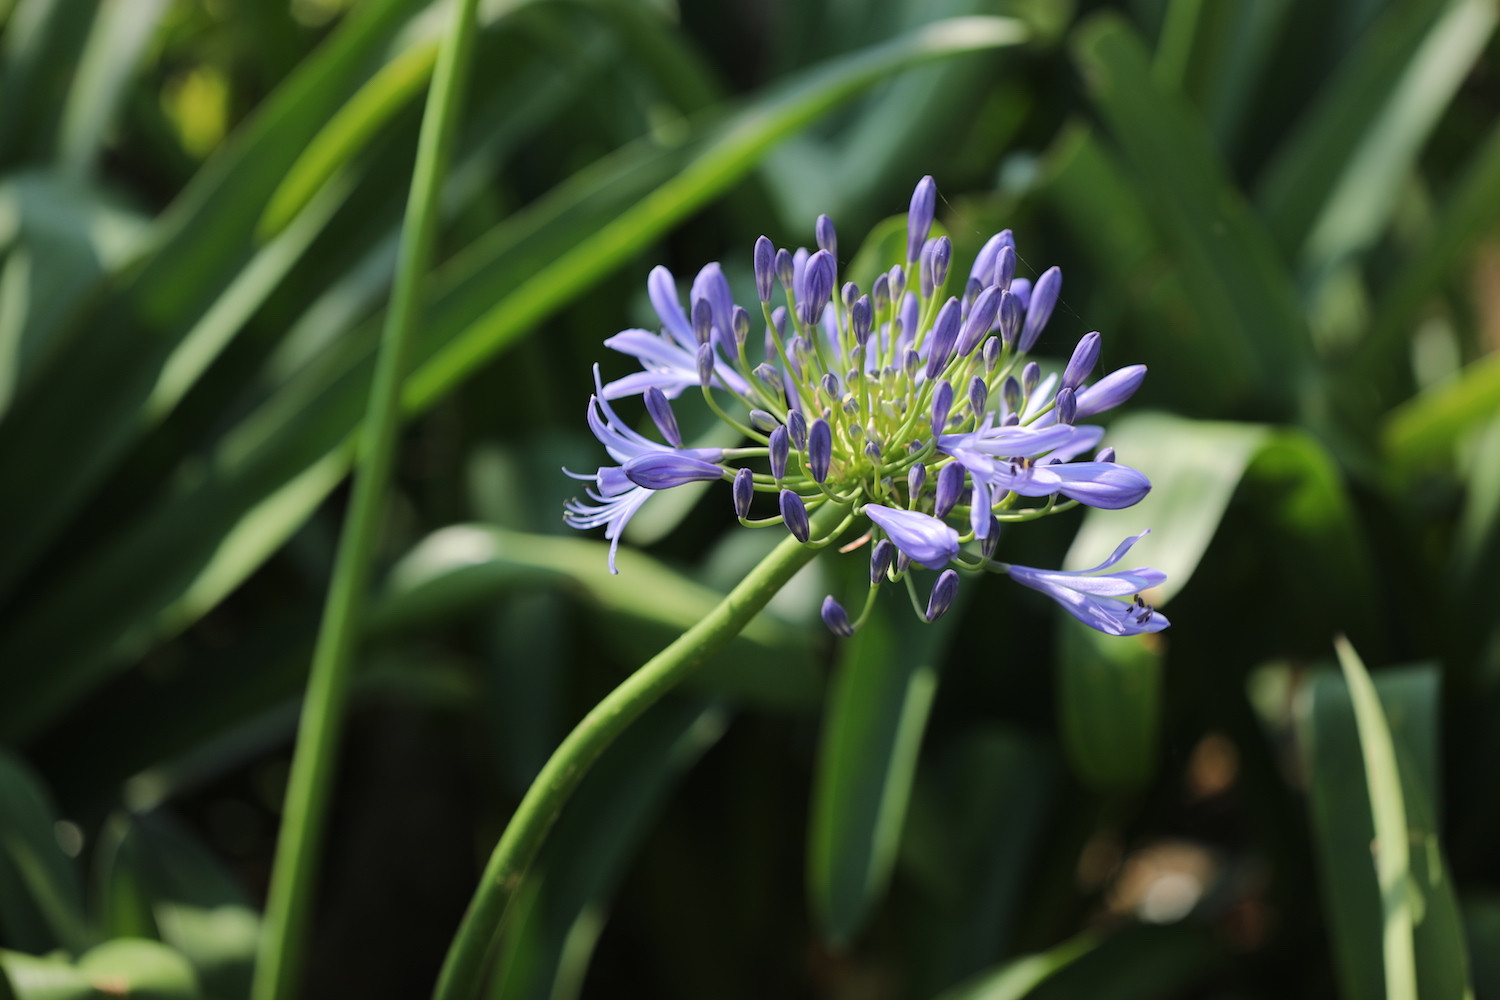 Cả đồi hoa tím đẹp ngỡ ngàng ở Fansipan, cần gì đi châu Âu ngắm lavender?